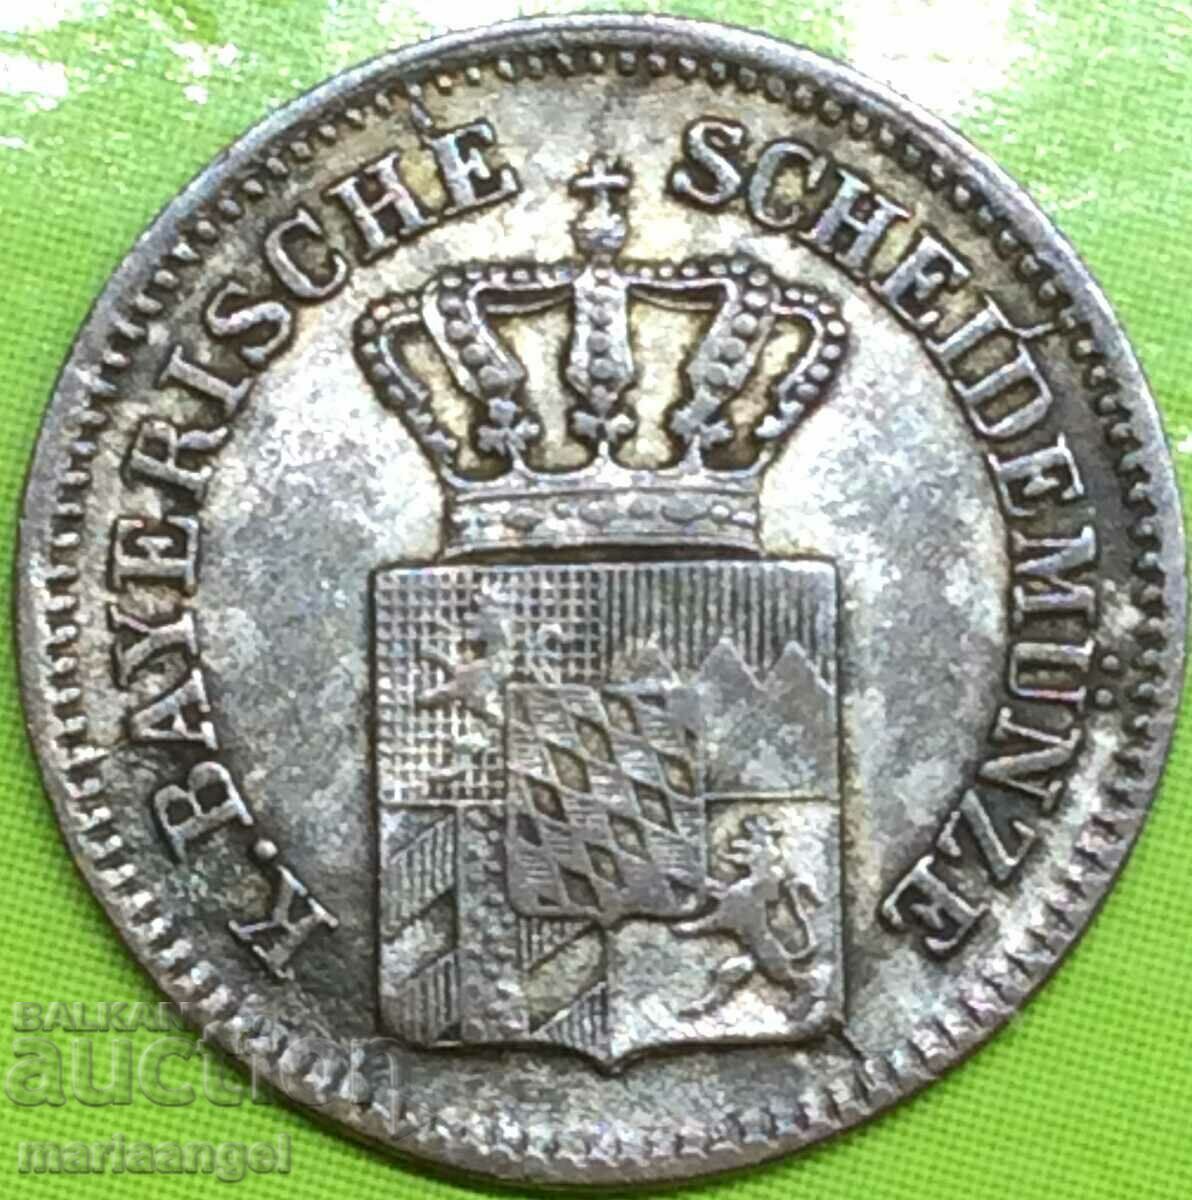 Germany Bavaria 1, Kreuzer 1854 silver - quite rare